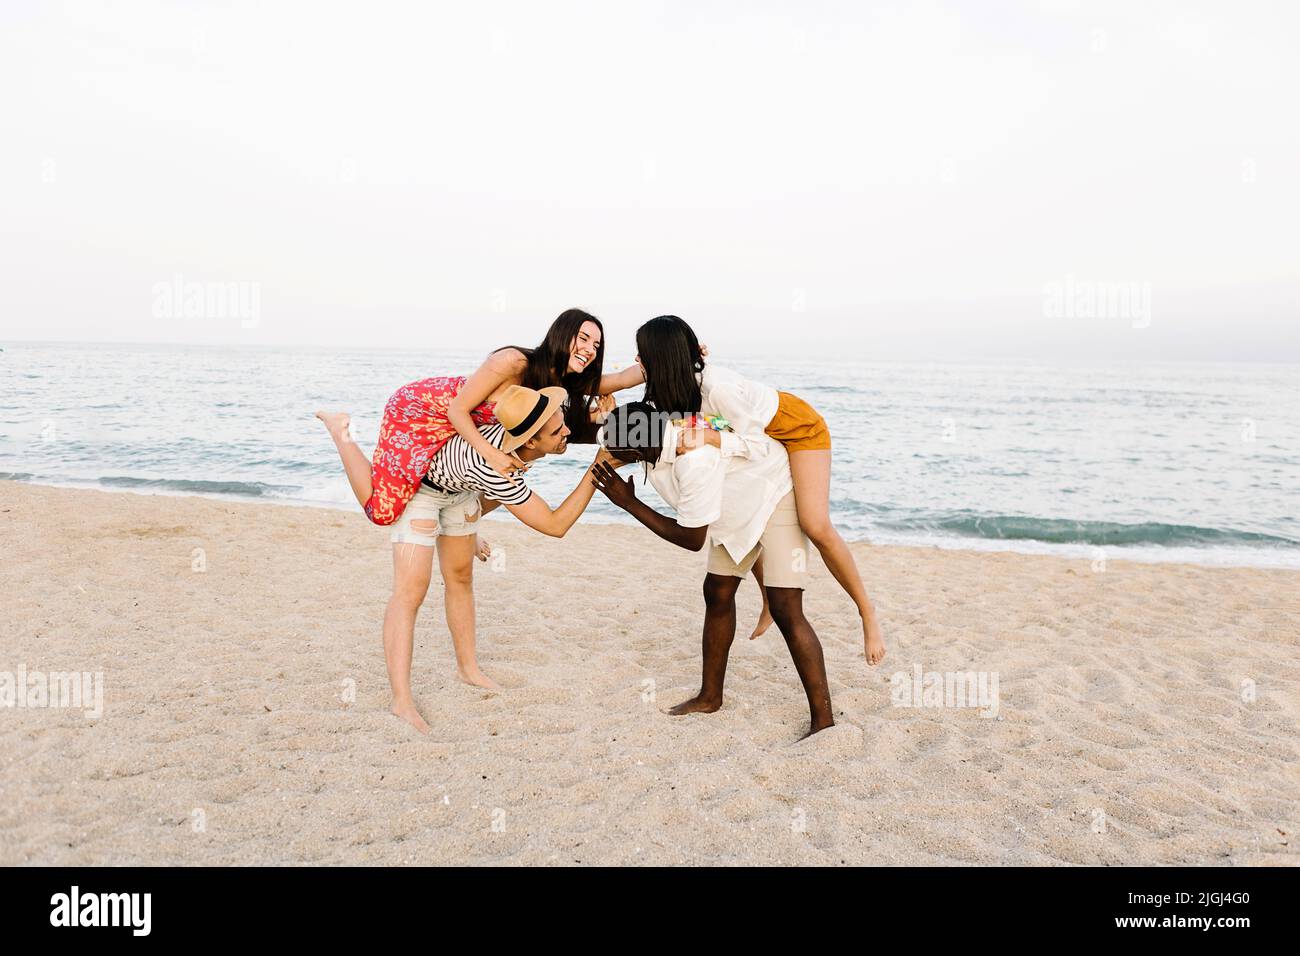 Deux hommes multiraciaux se battent tout en dorant leurs amies à la plage Banque D'Images